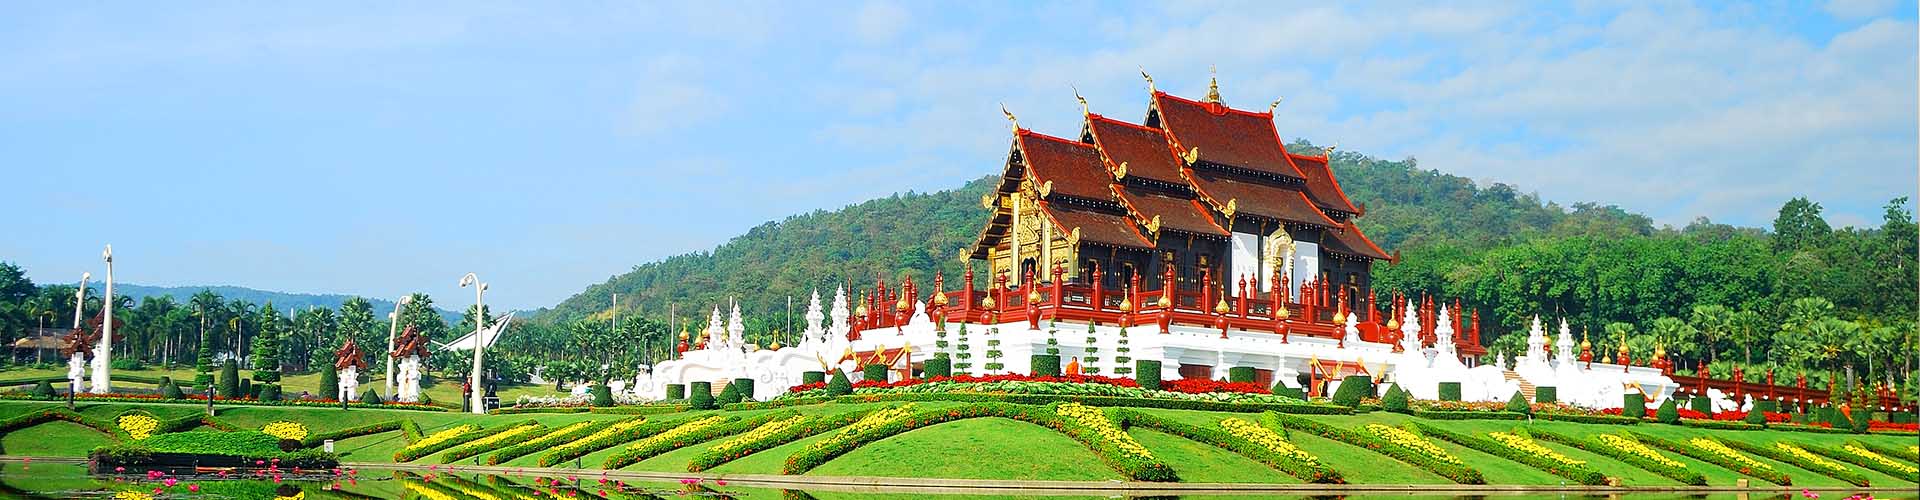 Chiang Mai to Chiang Rai